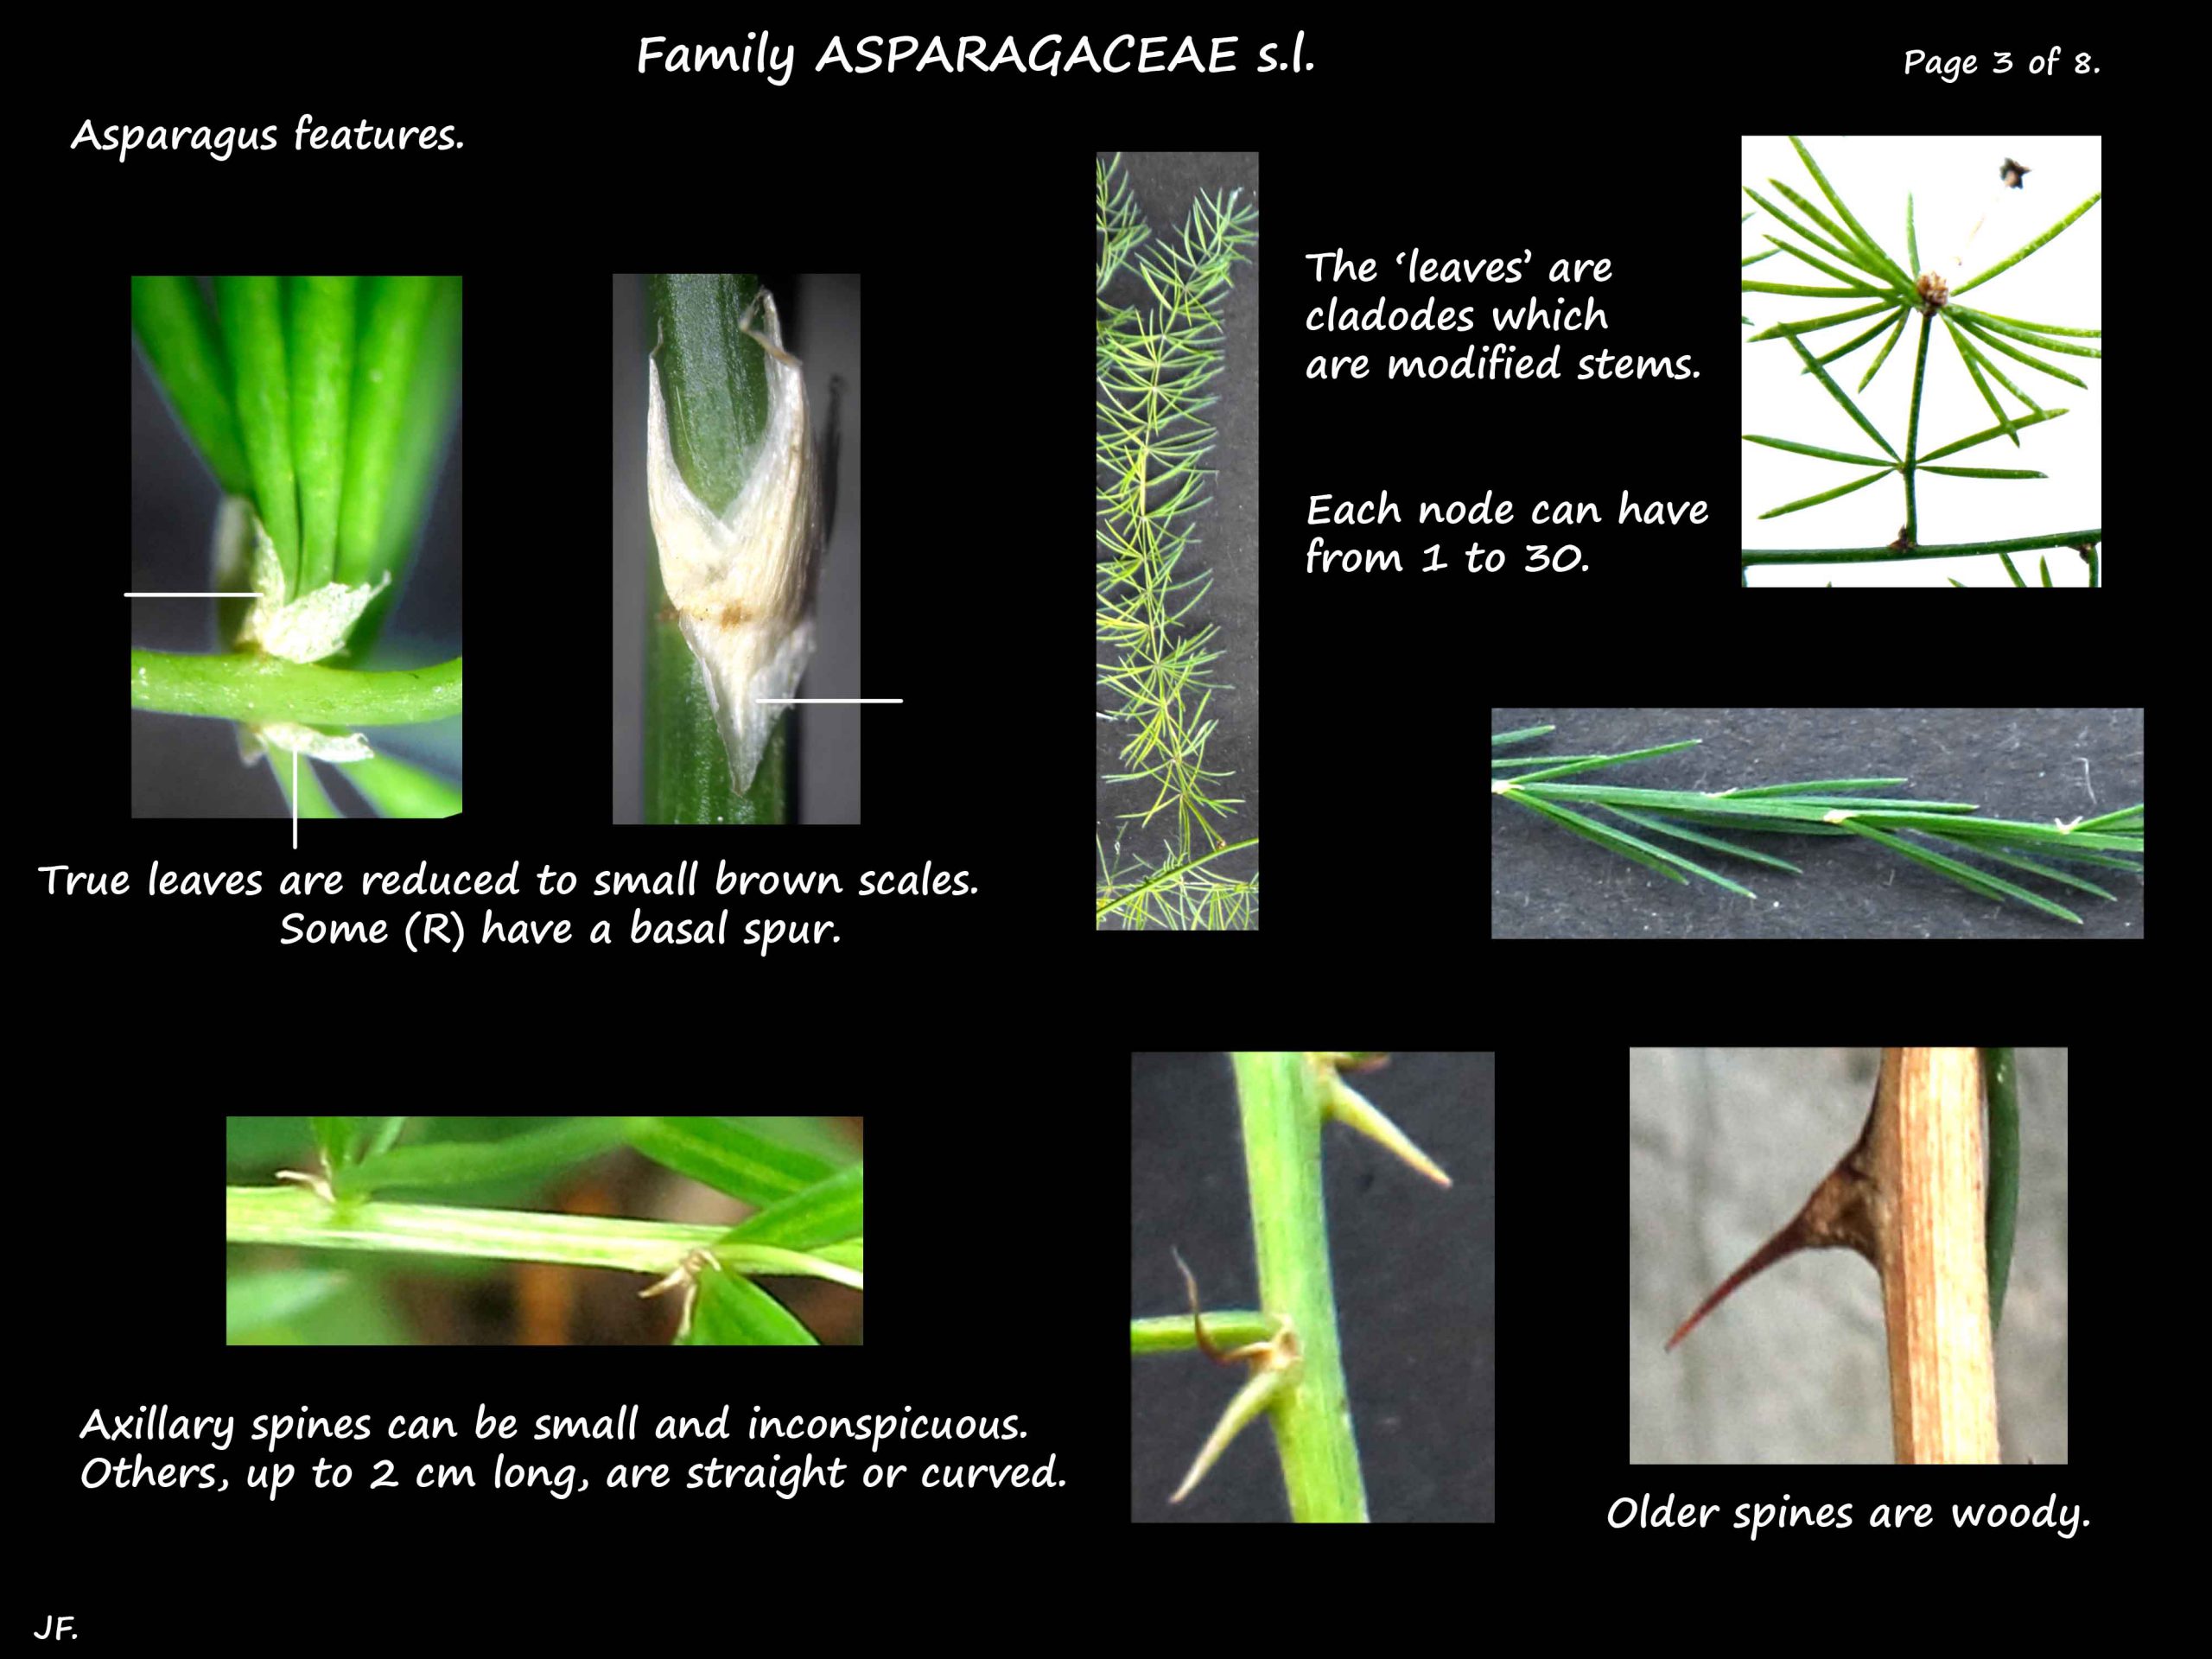 3 Spines on Asparagus stems